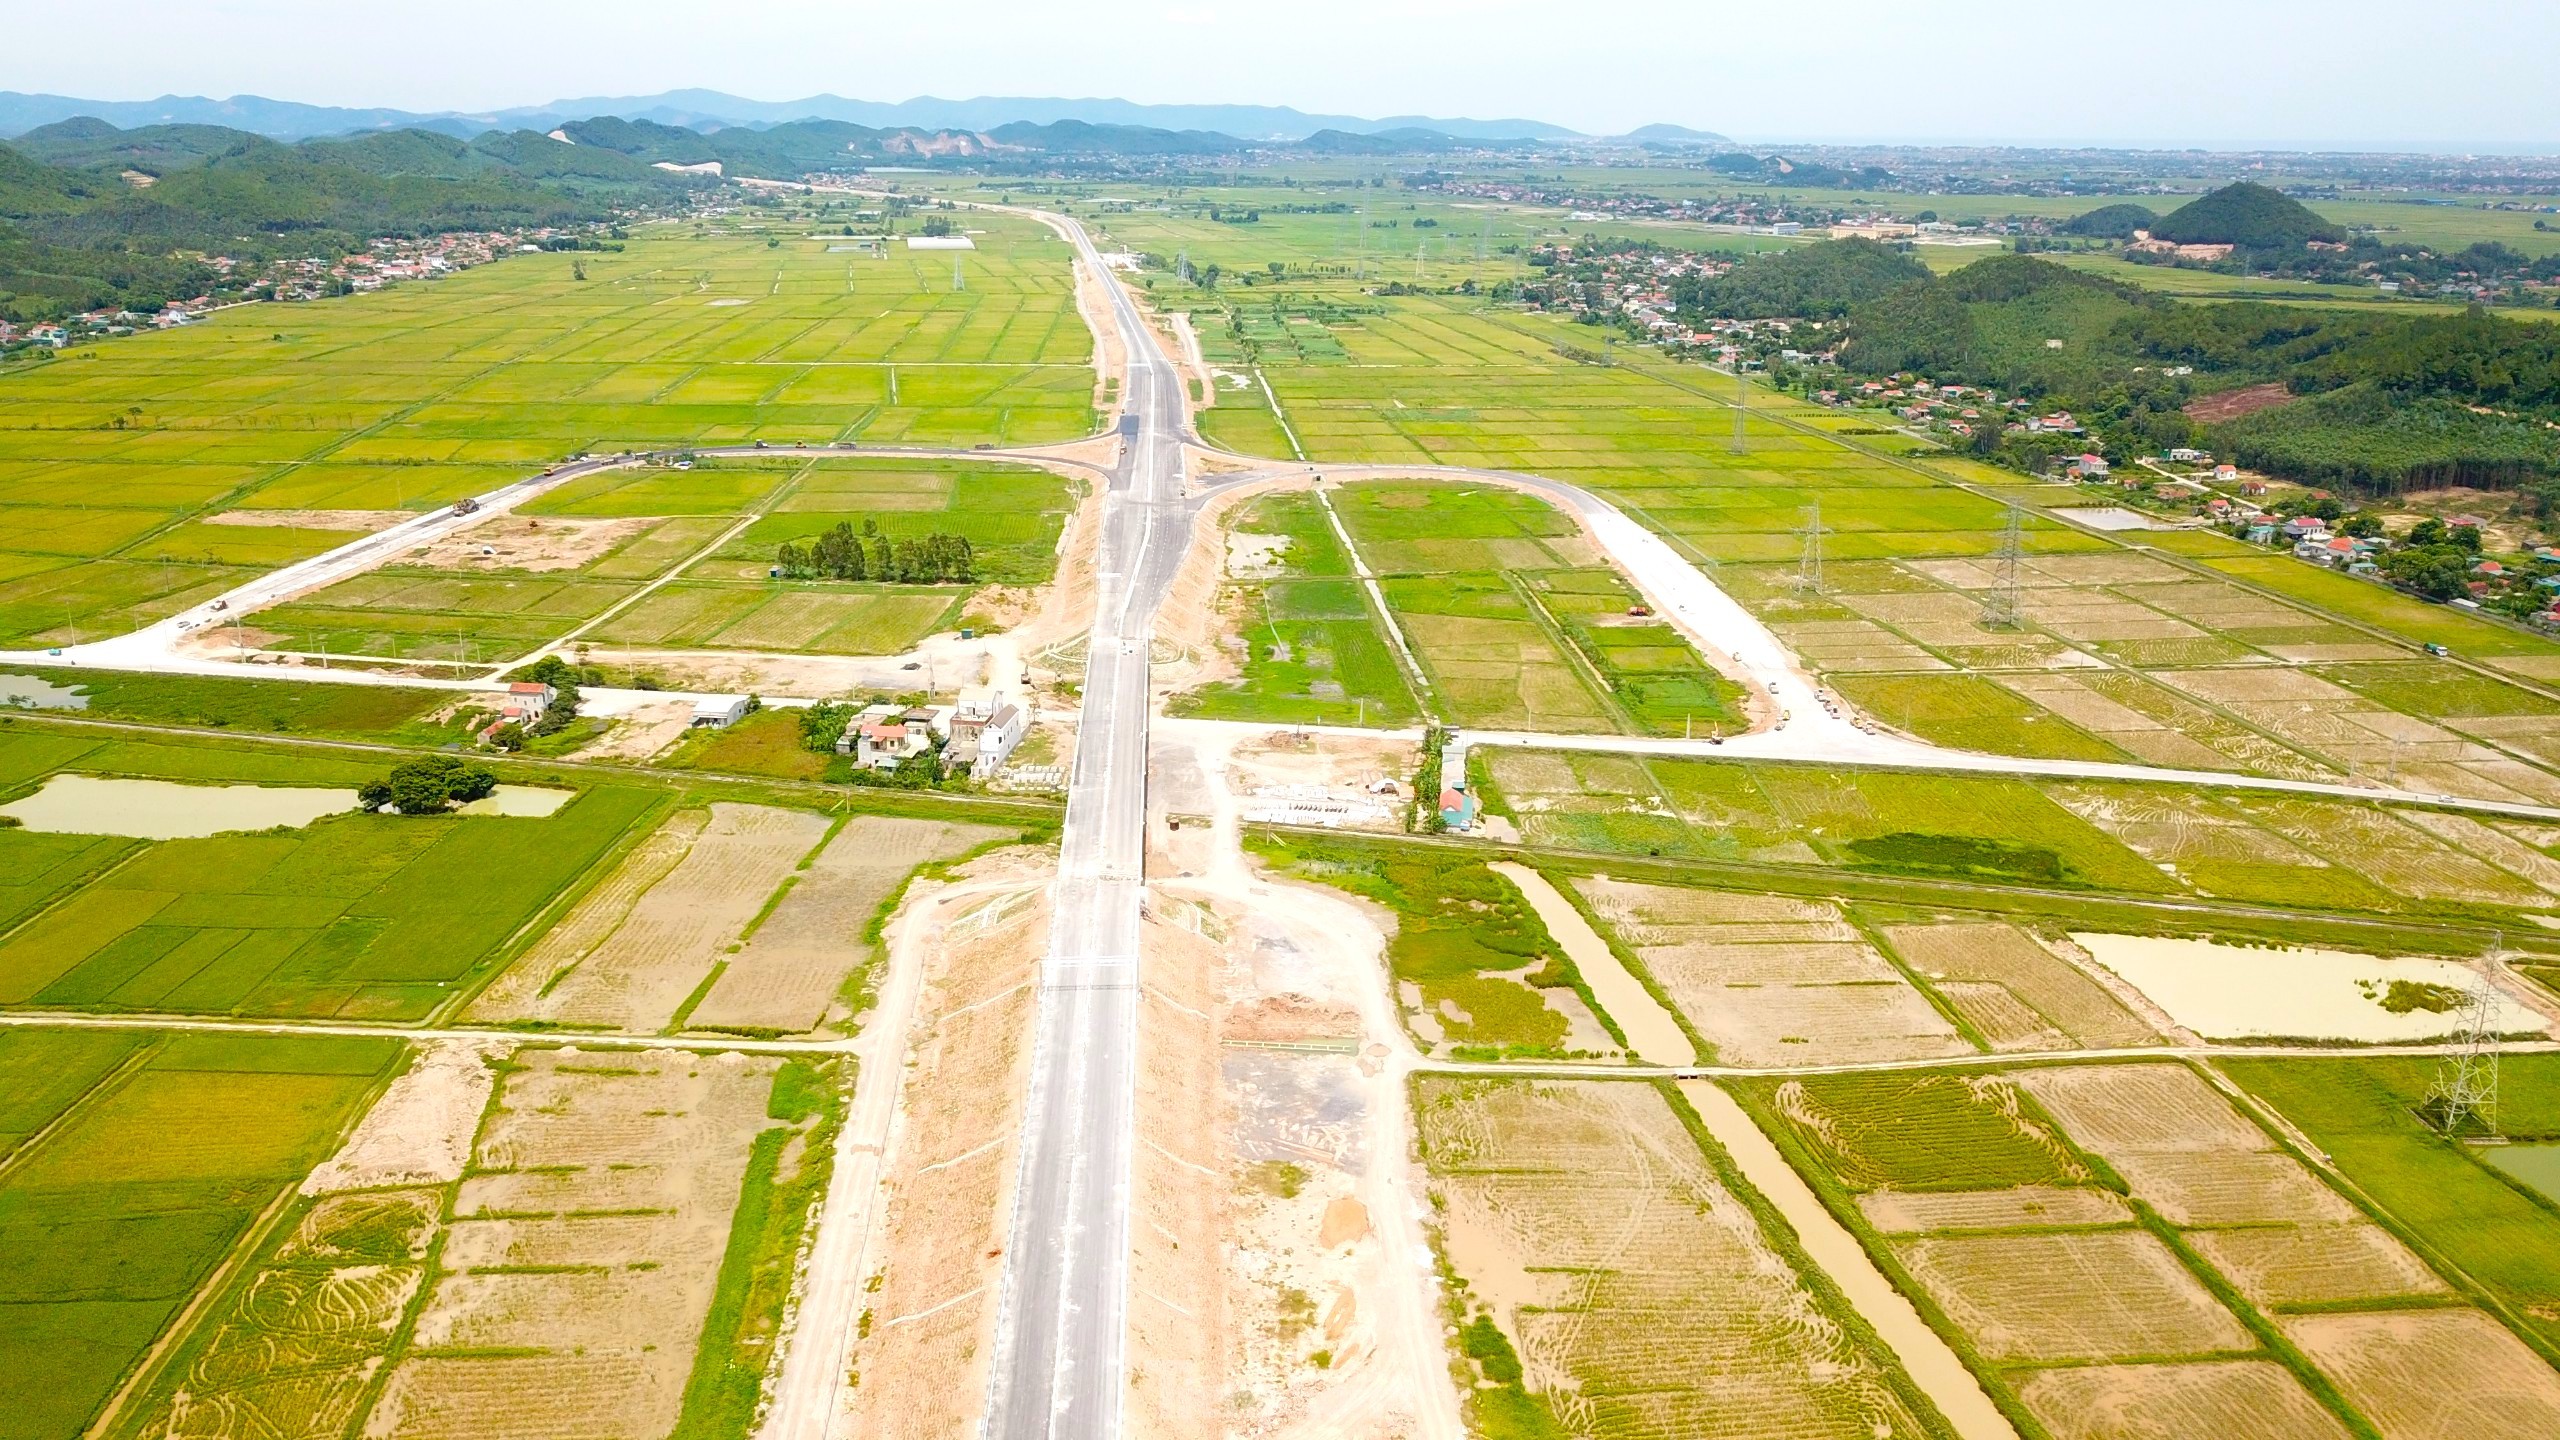 Nhiều bất cập tại dự án cao tốc Bắc Nam đoạn qua thị xã Hoàng Mai, Nghệ An